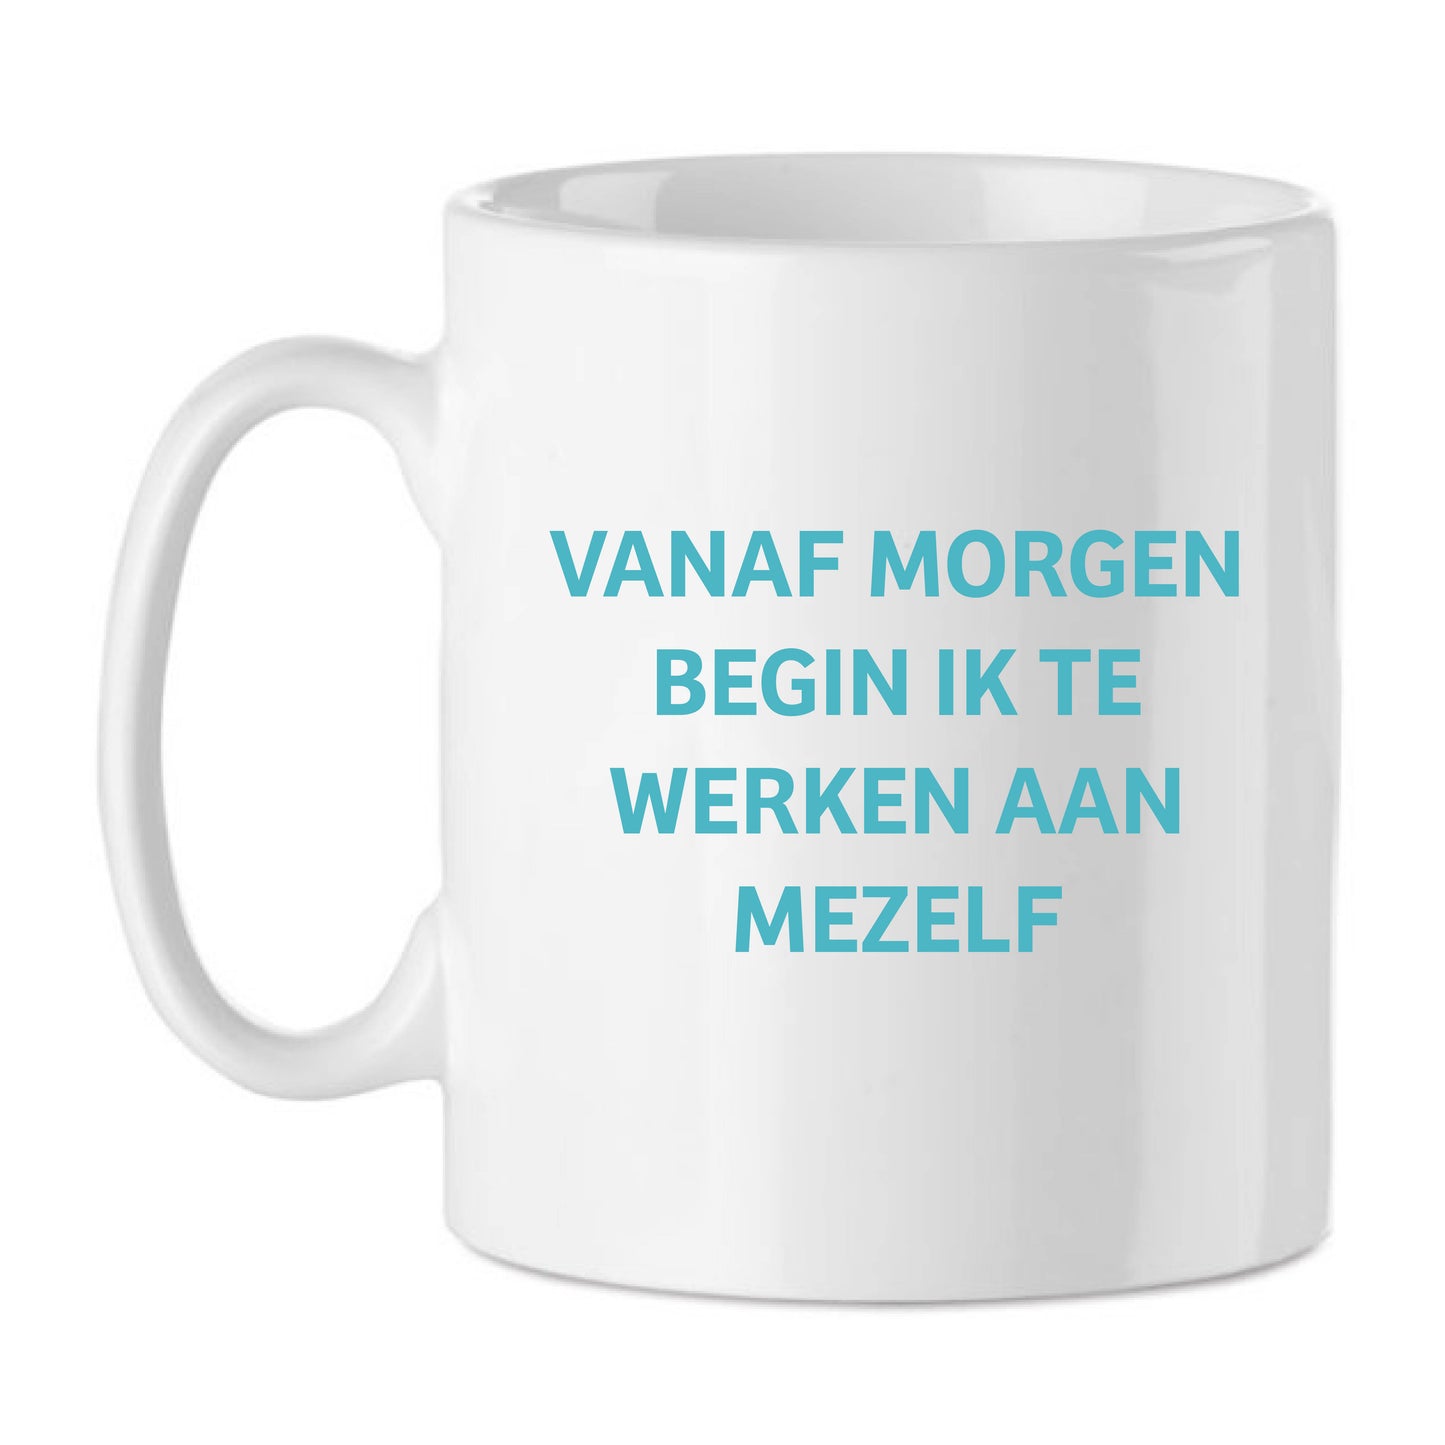 Arnout Van den Bossche - "Vanaf morgen begin ik te werken aan mezelf" (koffietas)